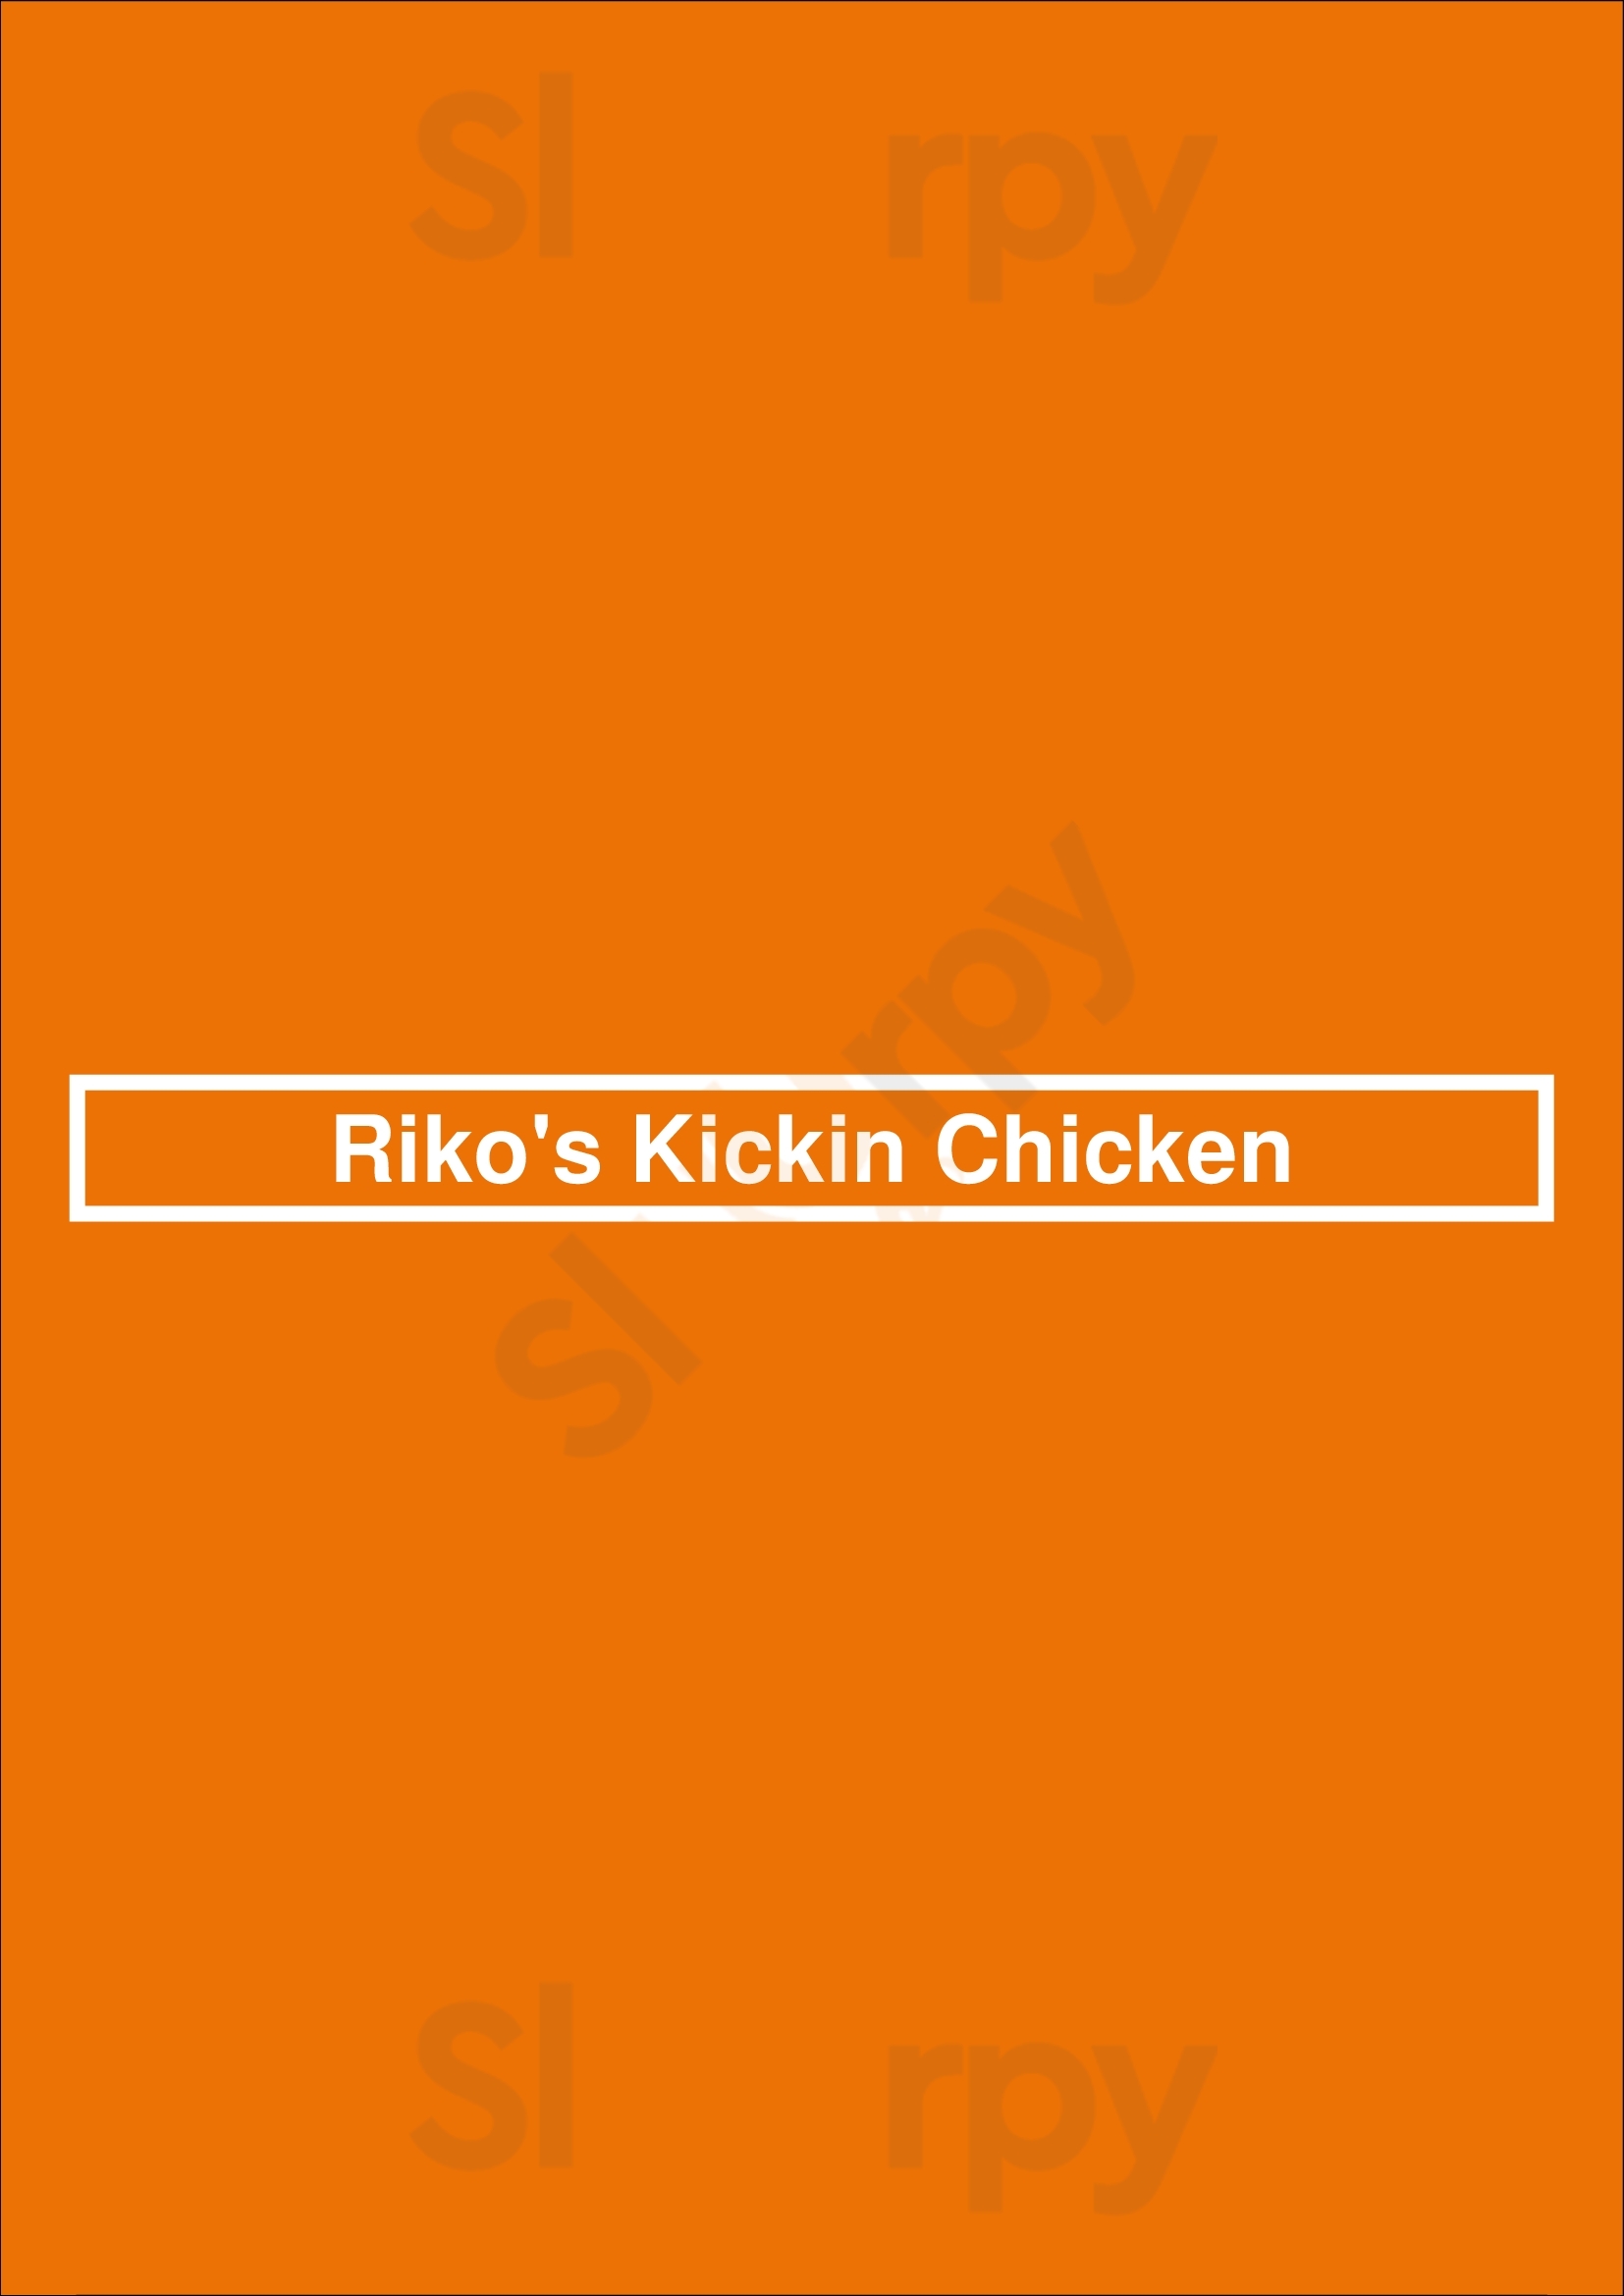 Riko's Kickin Chicken Memphis Menu - 1